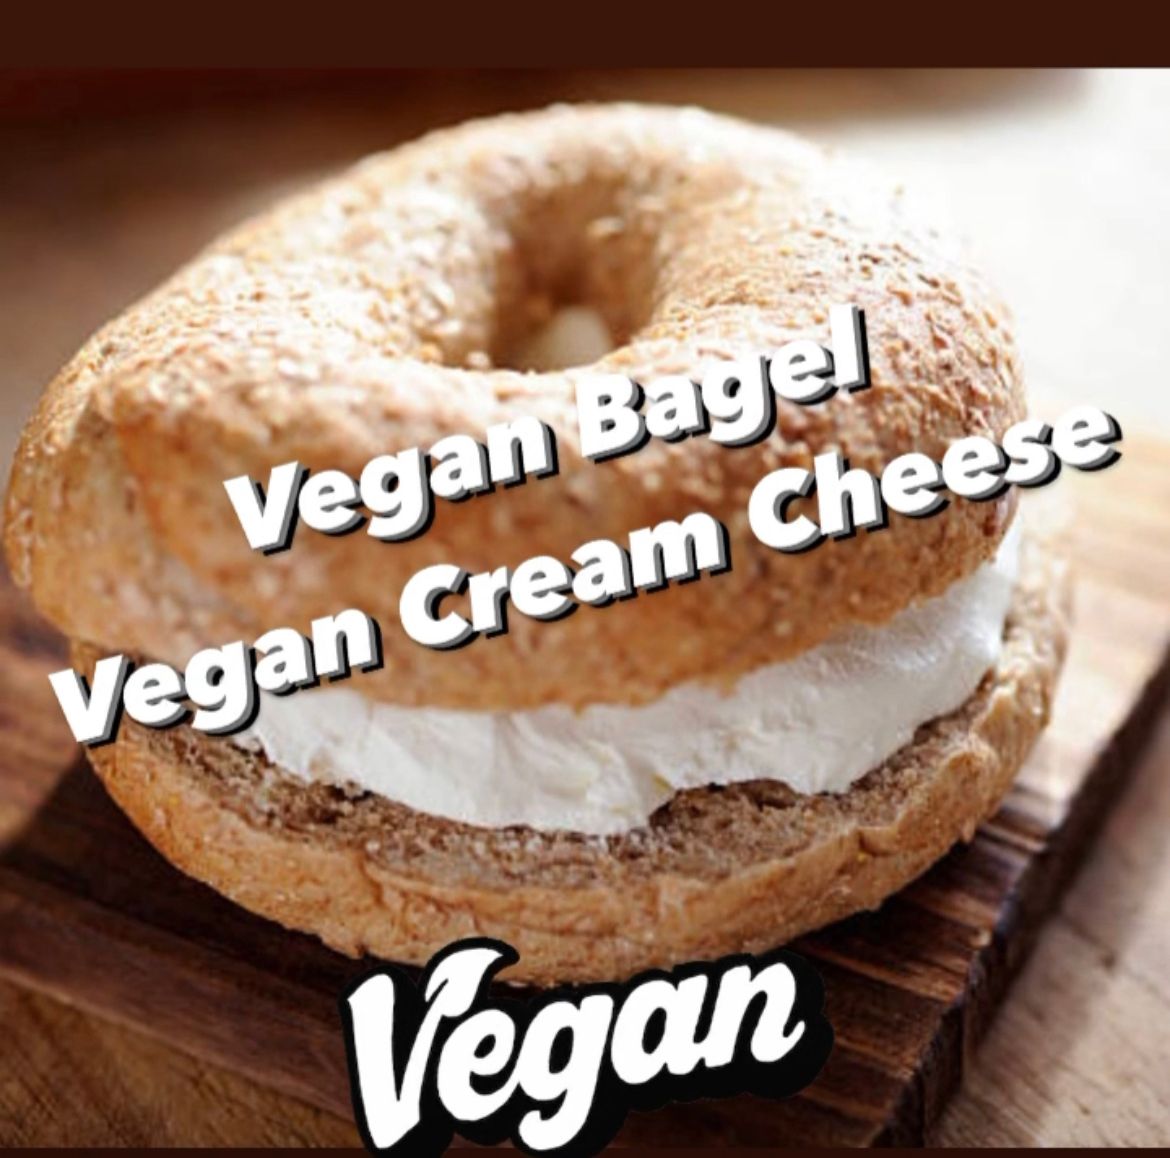 Vegan cream cheese